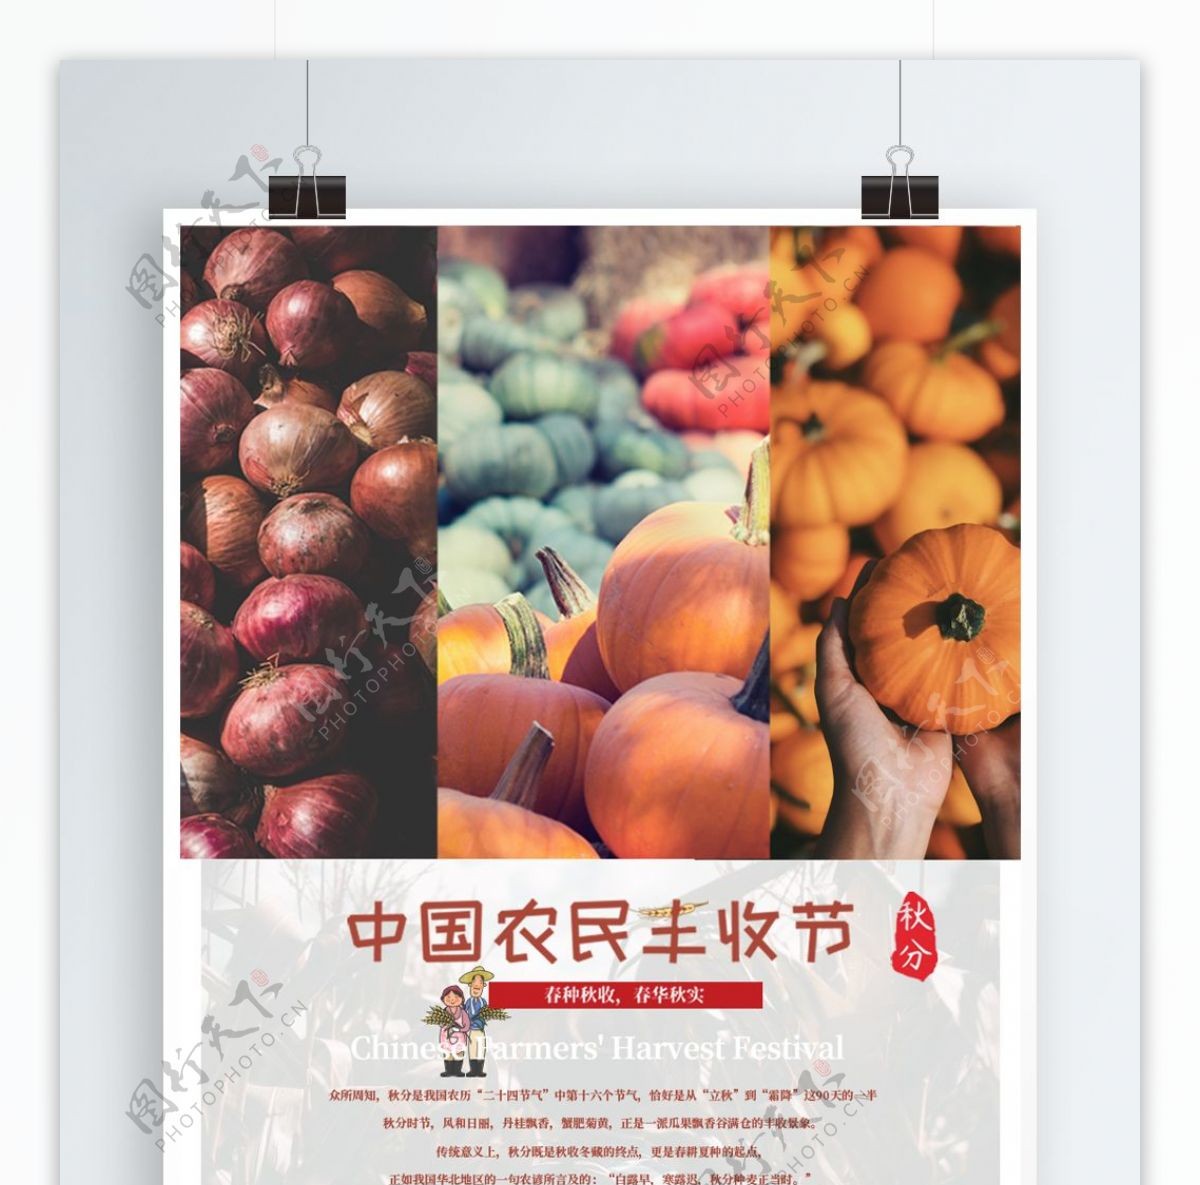 原创中国农民丰收节主题海报